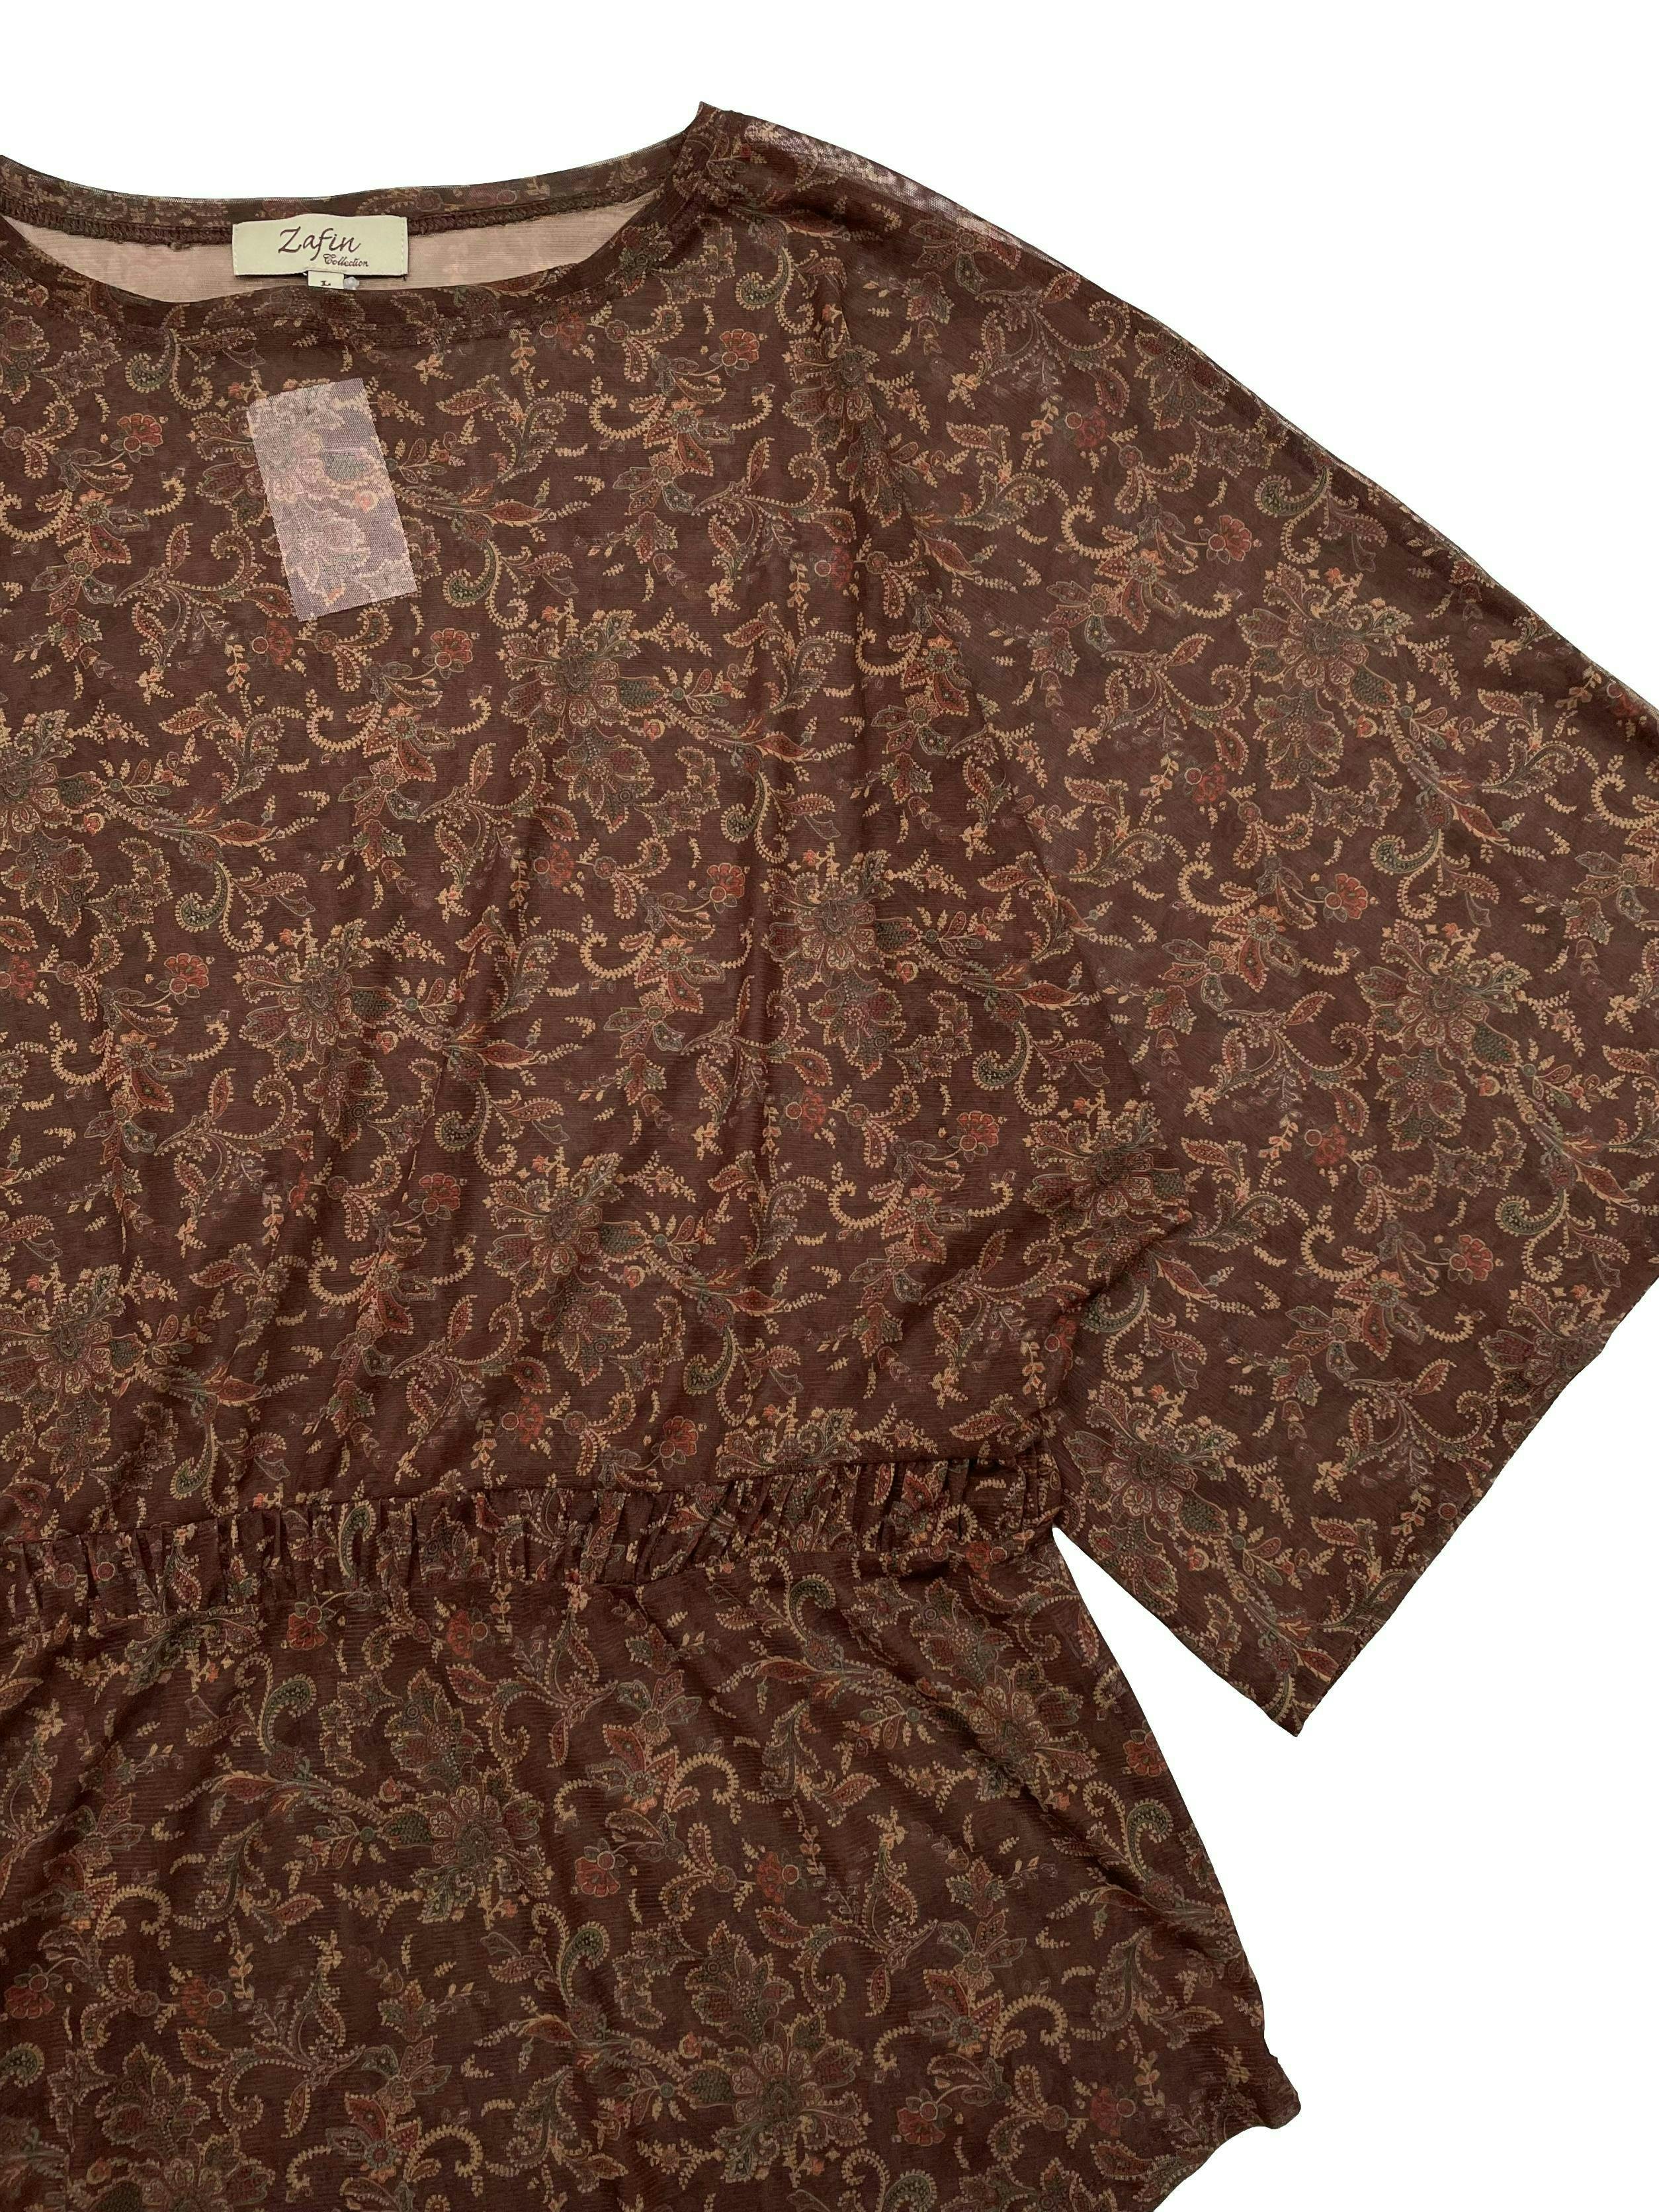 Blusa Zafin de mesh marrón con paisley al tono y elástico en la cintura. Largo 65cm